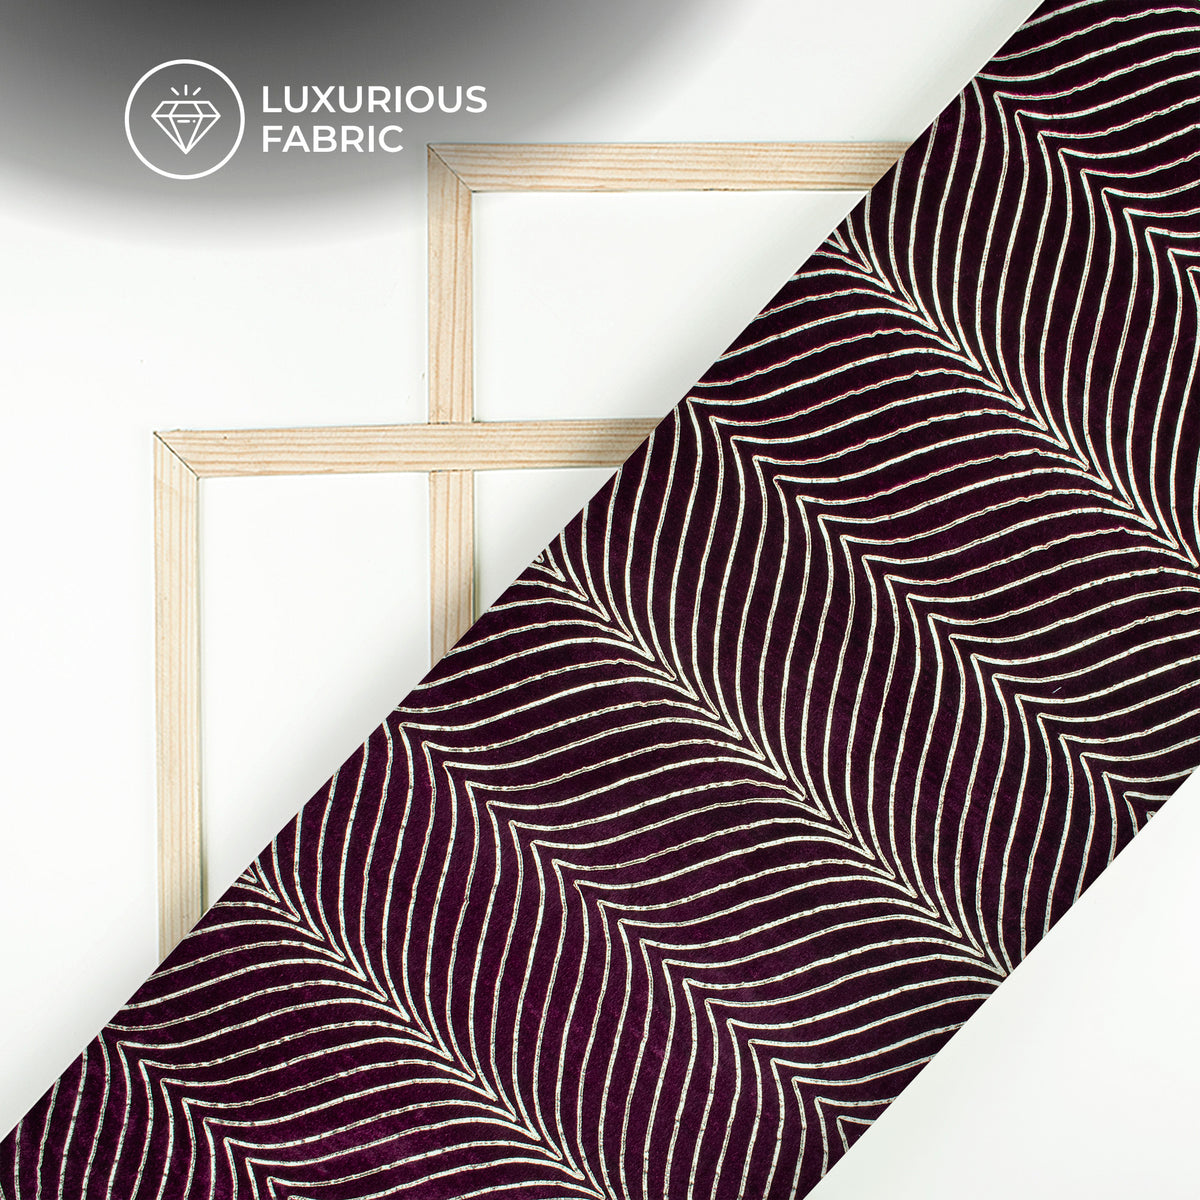 Luxurious Golden Zari Chevron Embroidery On Wine Purple Velvet Fabric